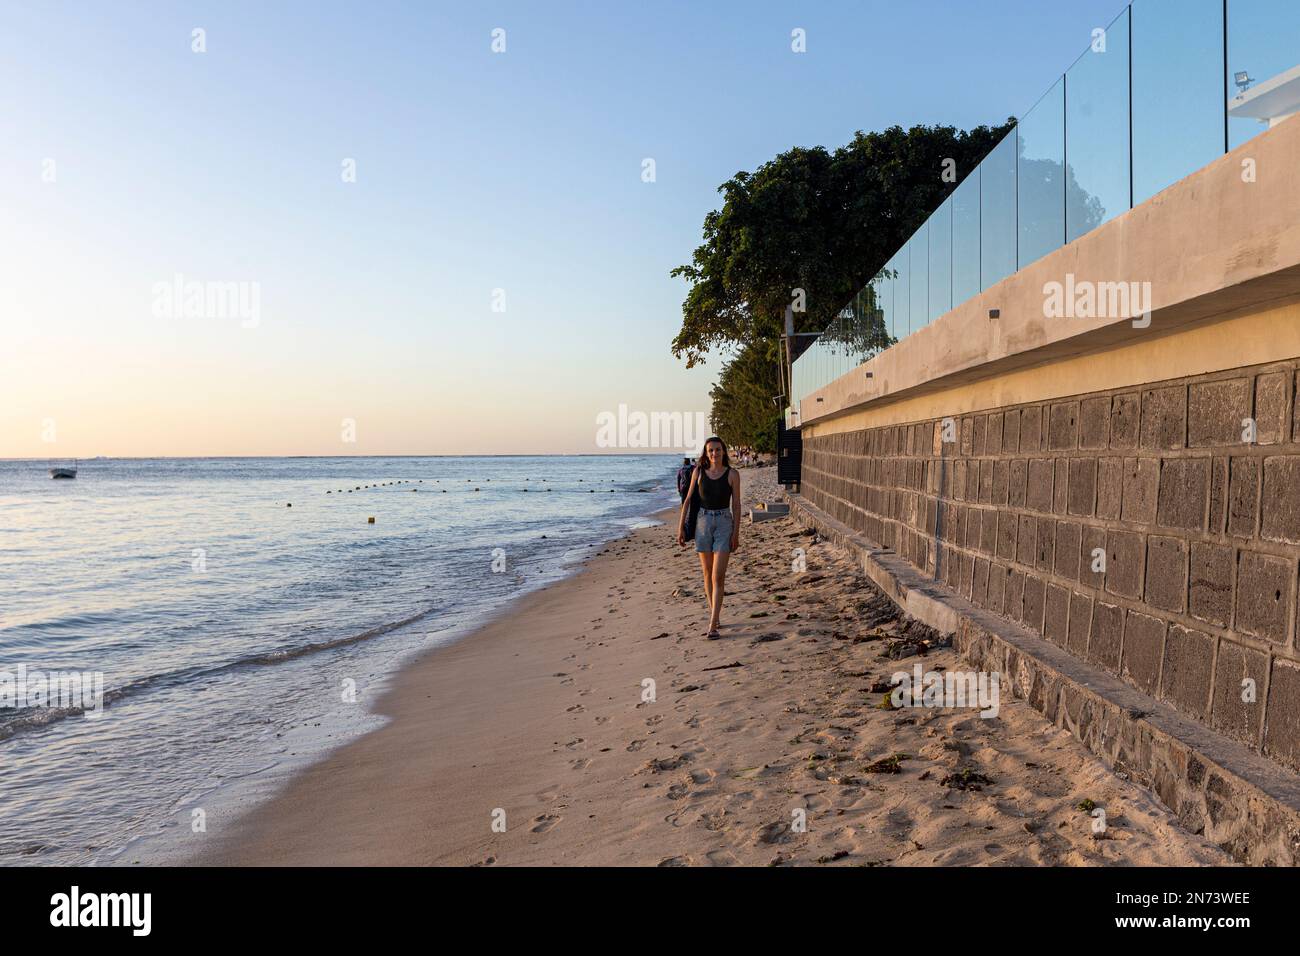 Eine junge Dame, die am Strand von Flic en flac auf mauritius Island, afrika, spaziert Stockfoto